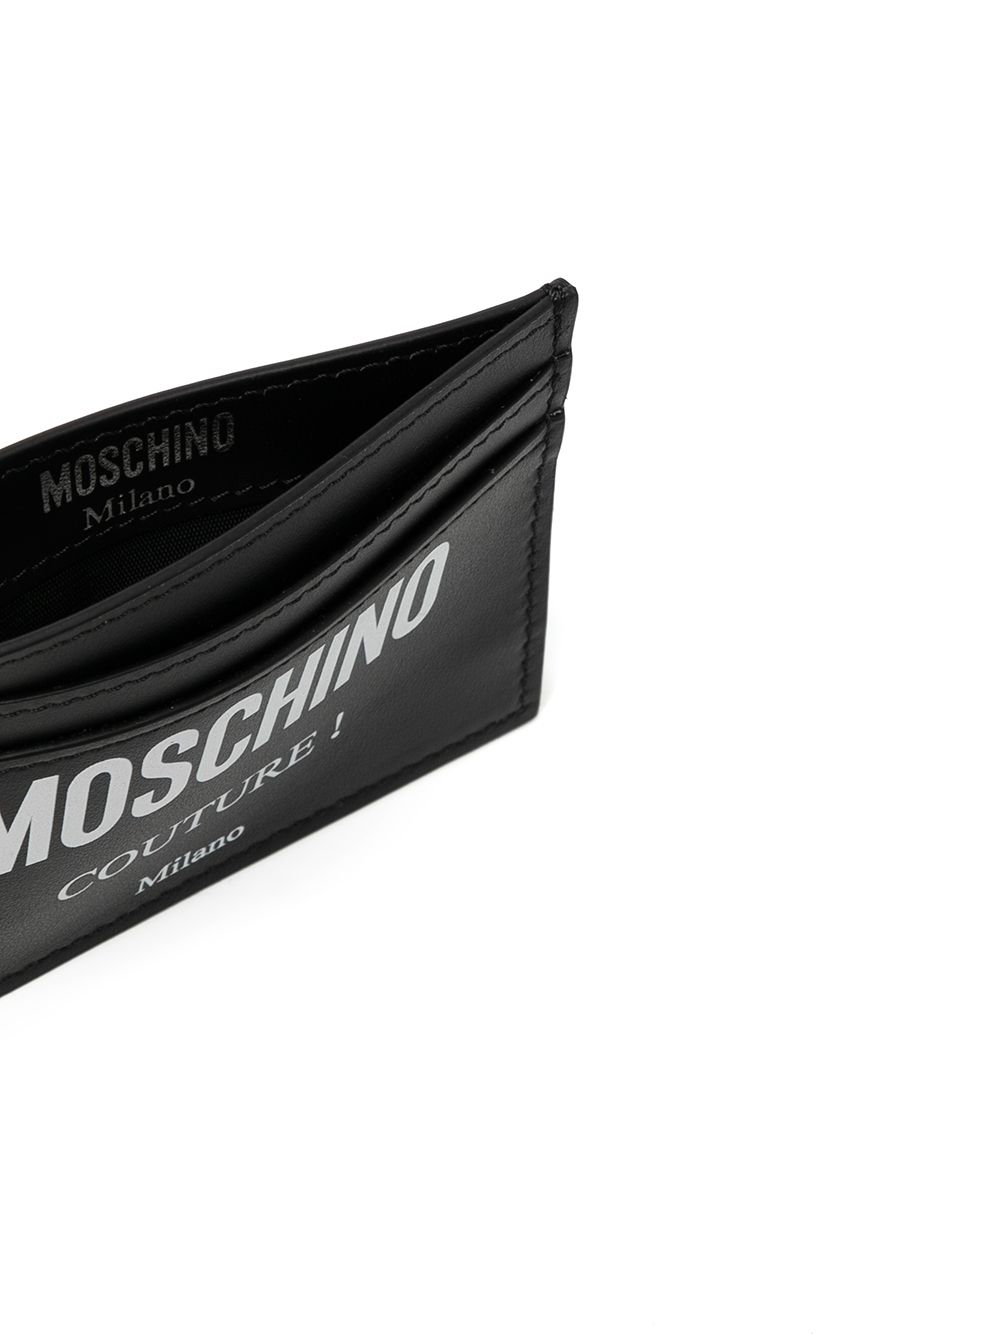 фото Moschino кошелек из искусственной кожи с логотипом